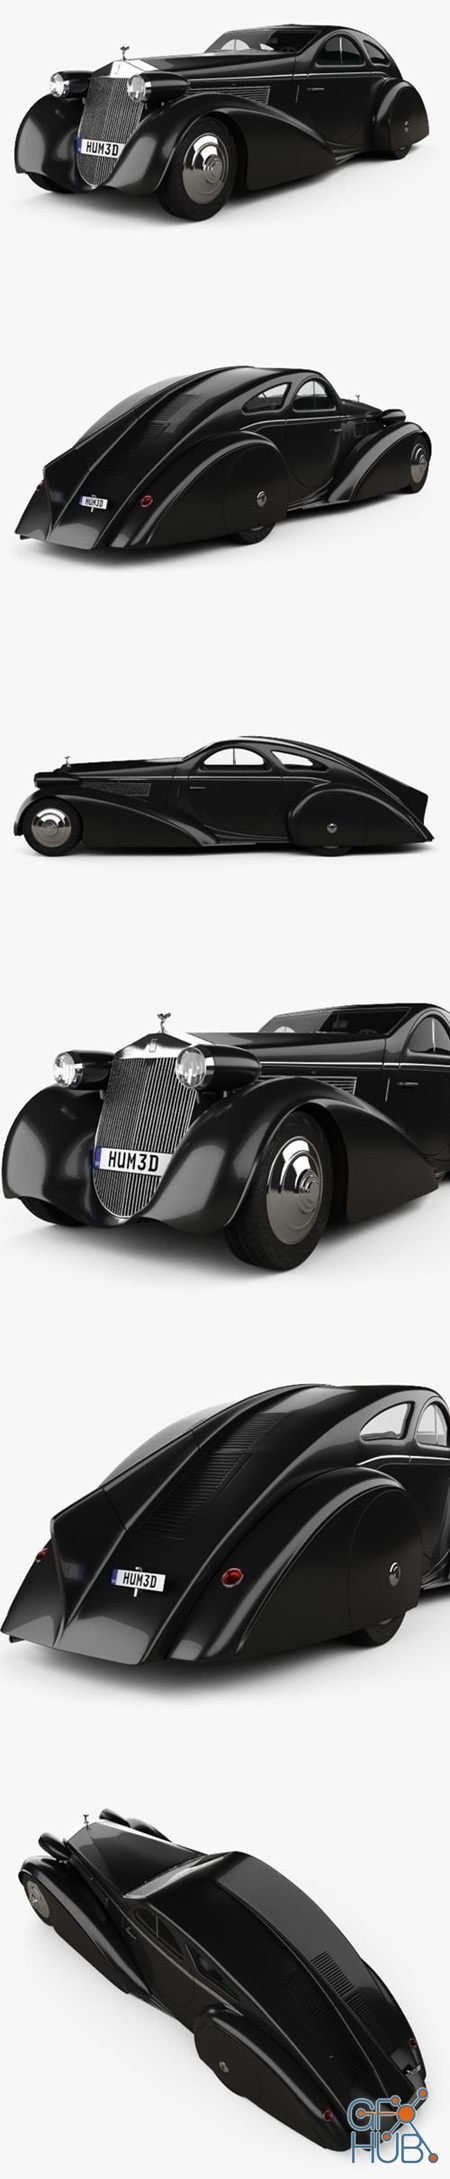 Rolls-Royce Phantom Jonckheere Coupe 1934